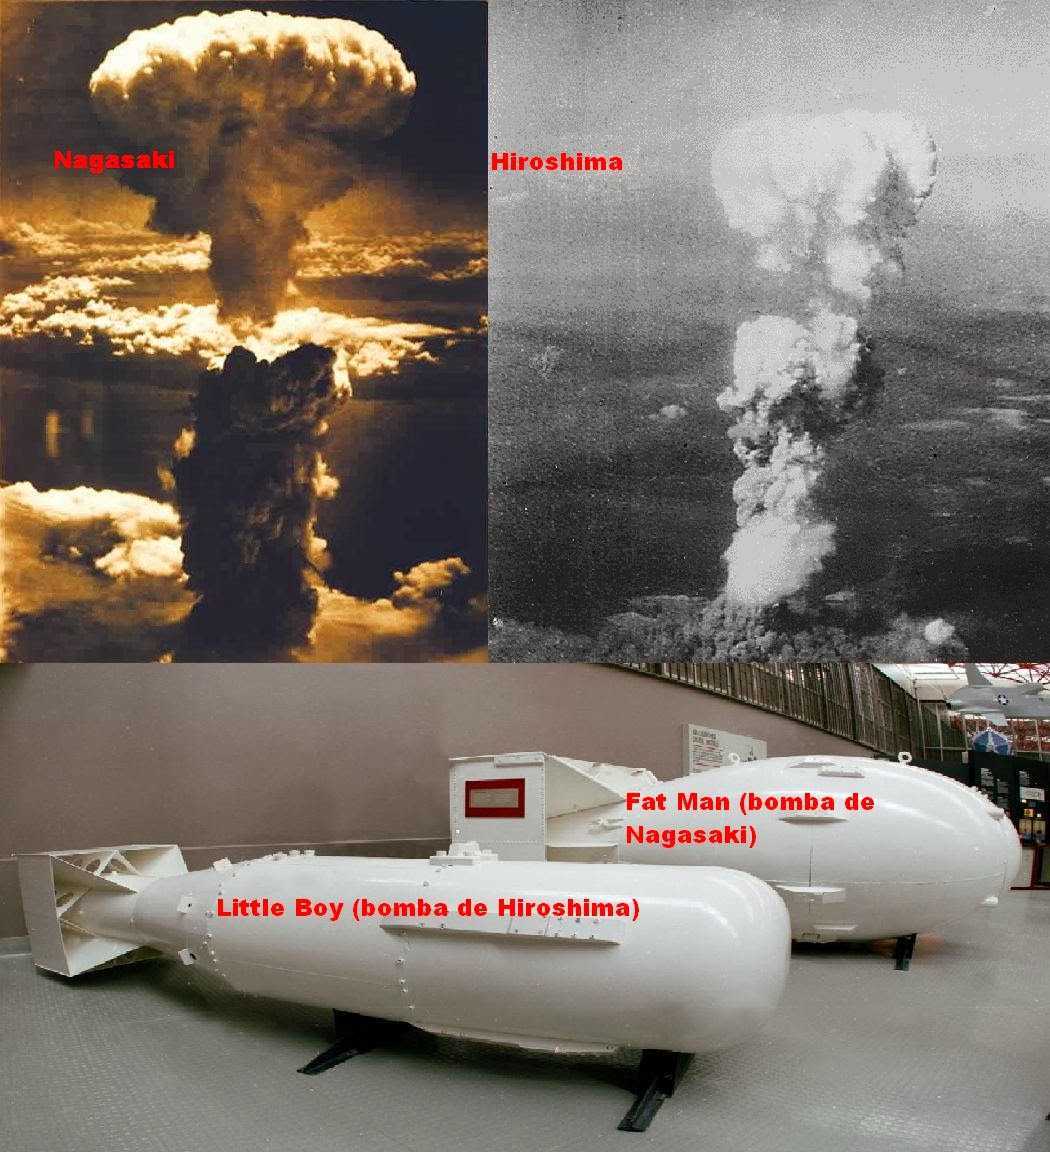 Почему сша сбросили. Хиросима и Нагасаки атомная бомба. Нагасаки и Хиросима США атамнойьомба. Ядерное оружие США Хиросима Нагасаки. Япония 1945 Хиросима и Нагасаки.